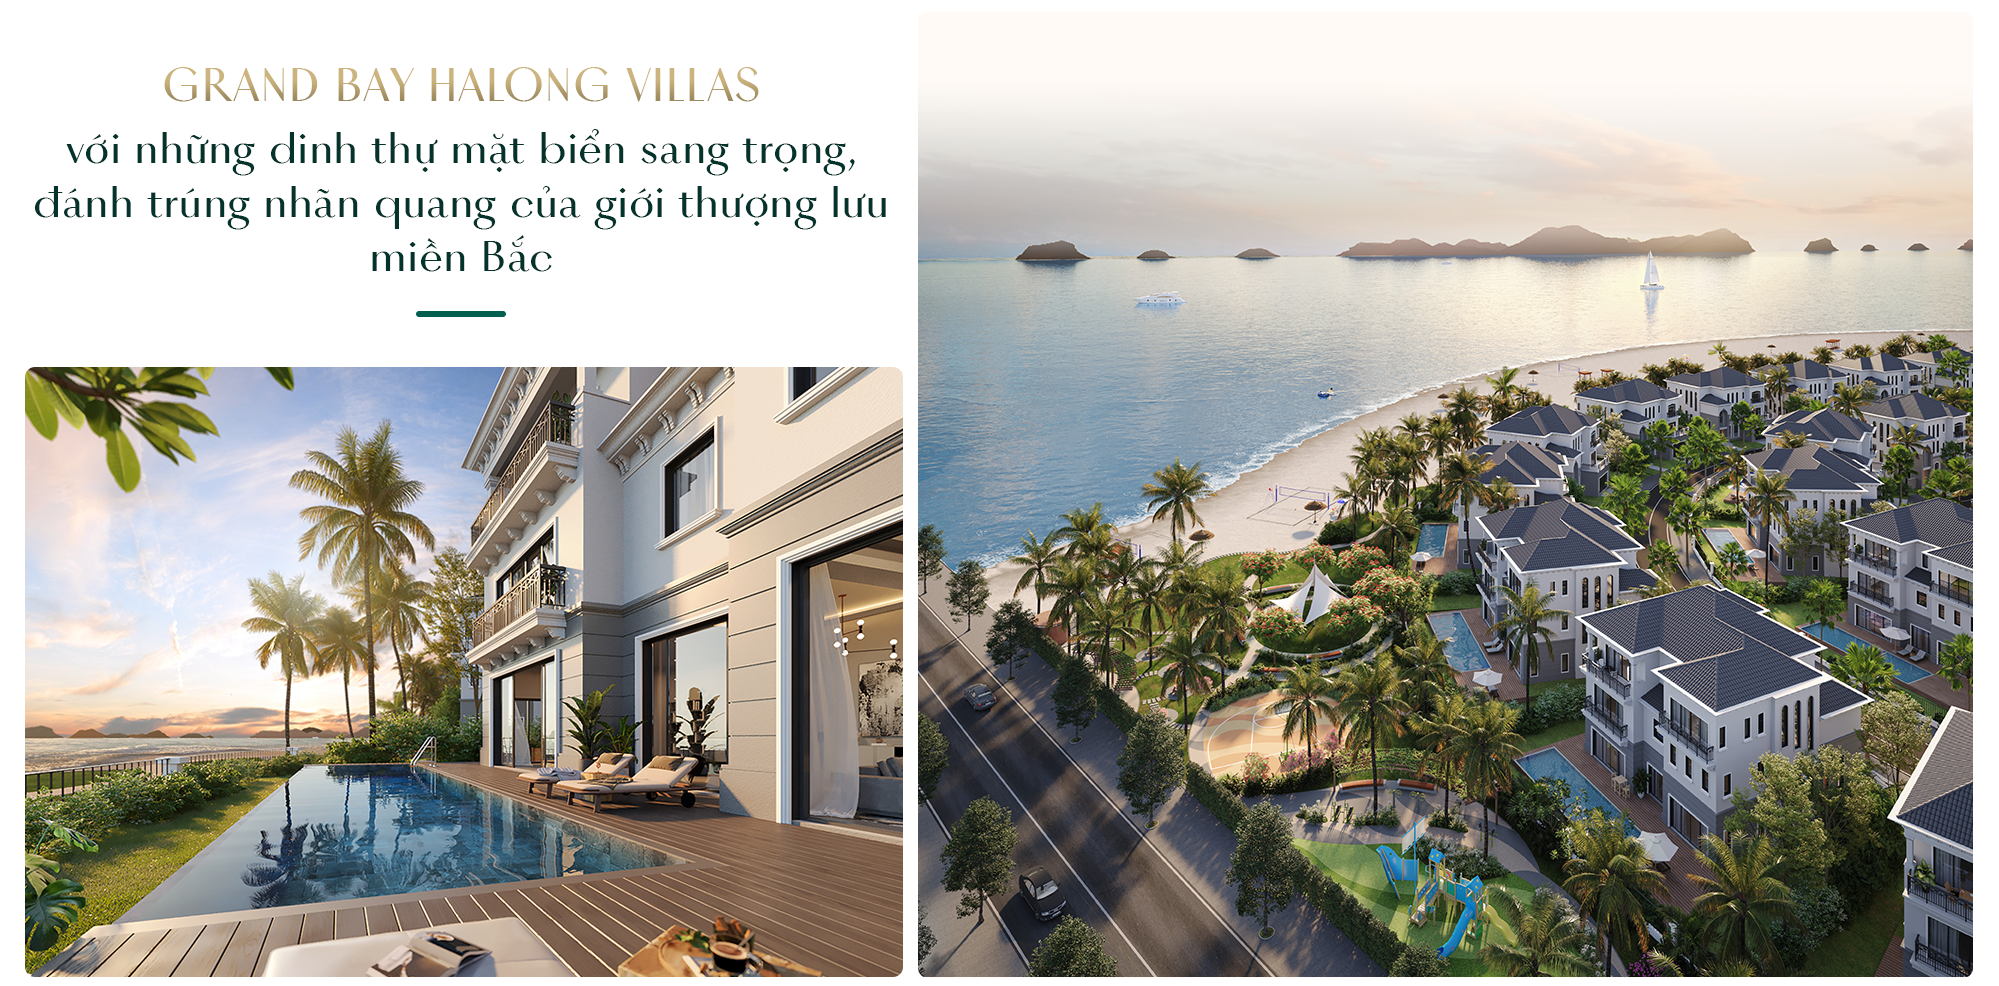 Grand Bay Halong Villas: Bến đỗ của phong cách sống Resort living sang trọng bên vịnh biển- Ảnh 2.